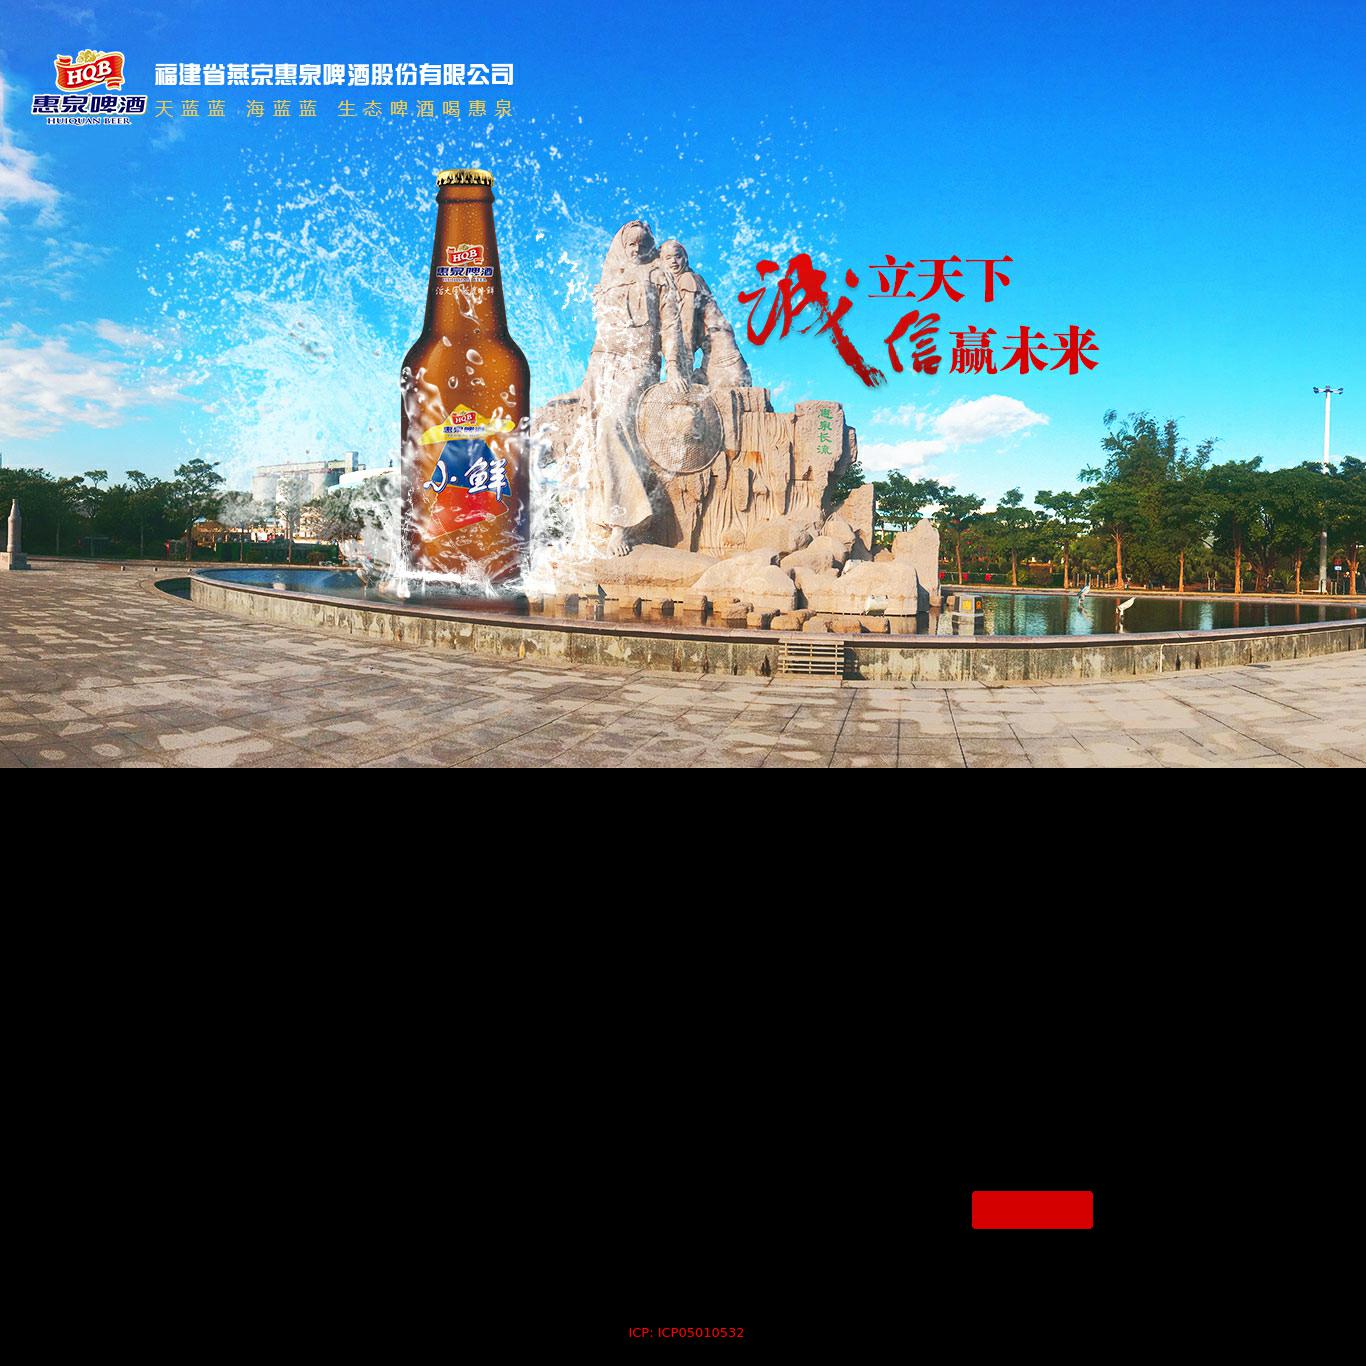 燕京惠泉啤酒股份有限公司